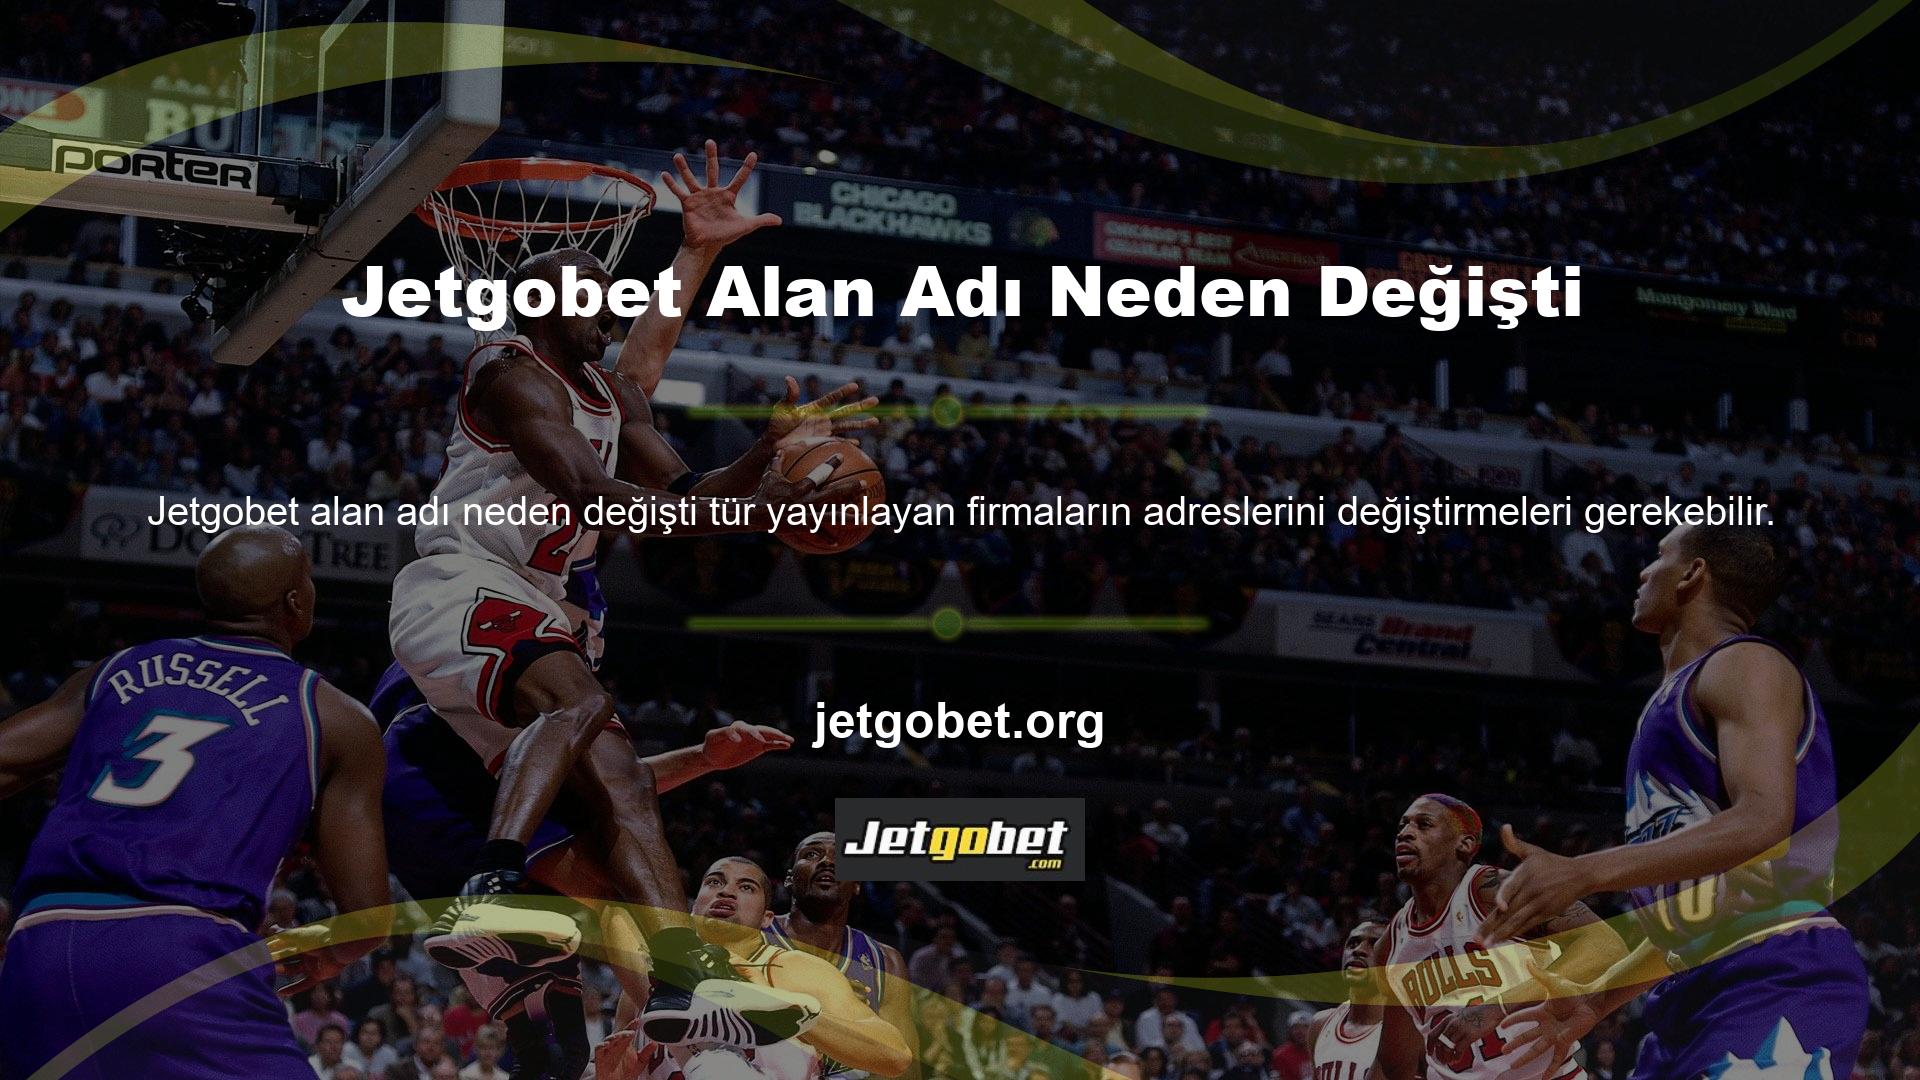 Yeni içeriklere bahis oynamak için başka bir uzantıya geçiş yapan Jetgobet, Türkiye'de neden alan adını düzenli olarak değiştirmesi gerektiğini merak ediyor? Hele ki çevrimiçi oyun sağlayıcısı Jetgobet yeni içerikleri Türkçe seçeneğiyle mevcut olduğuna göre? Lütfen, herhangi bir kısıtlama olmadığını unutmayın